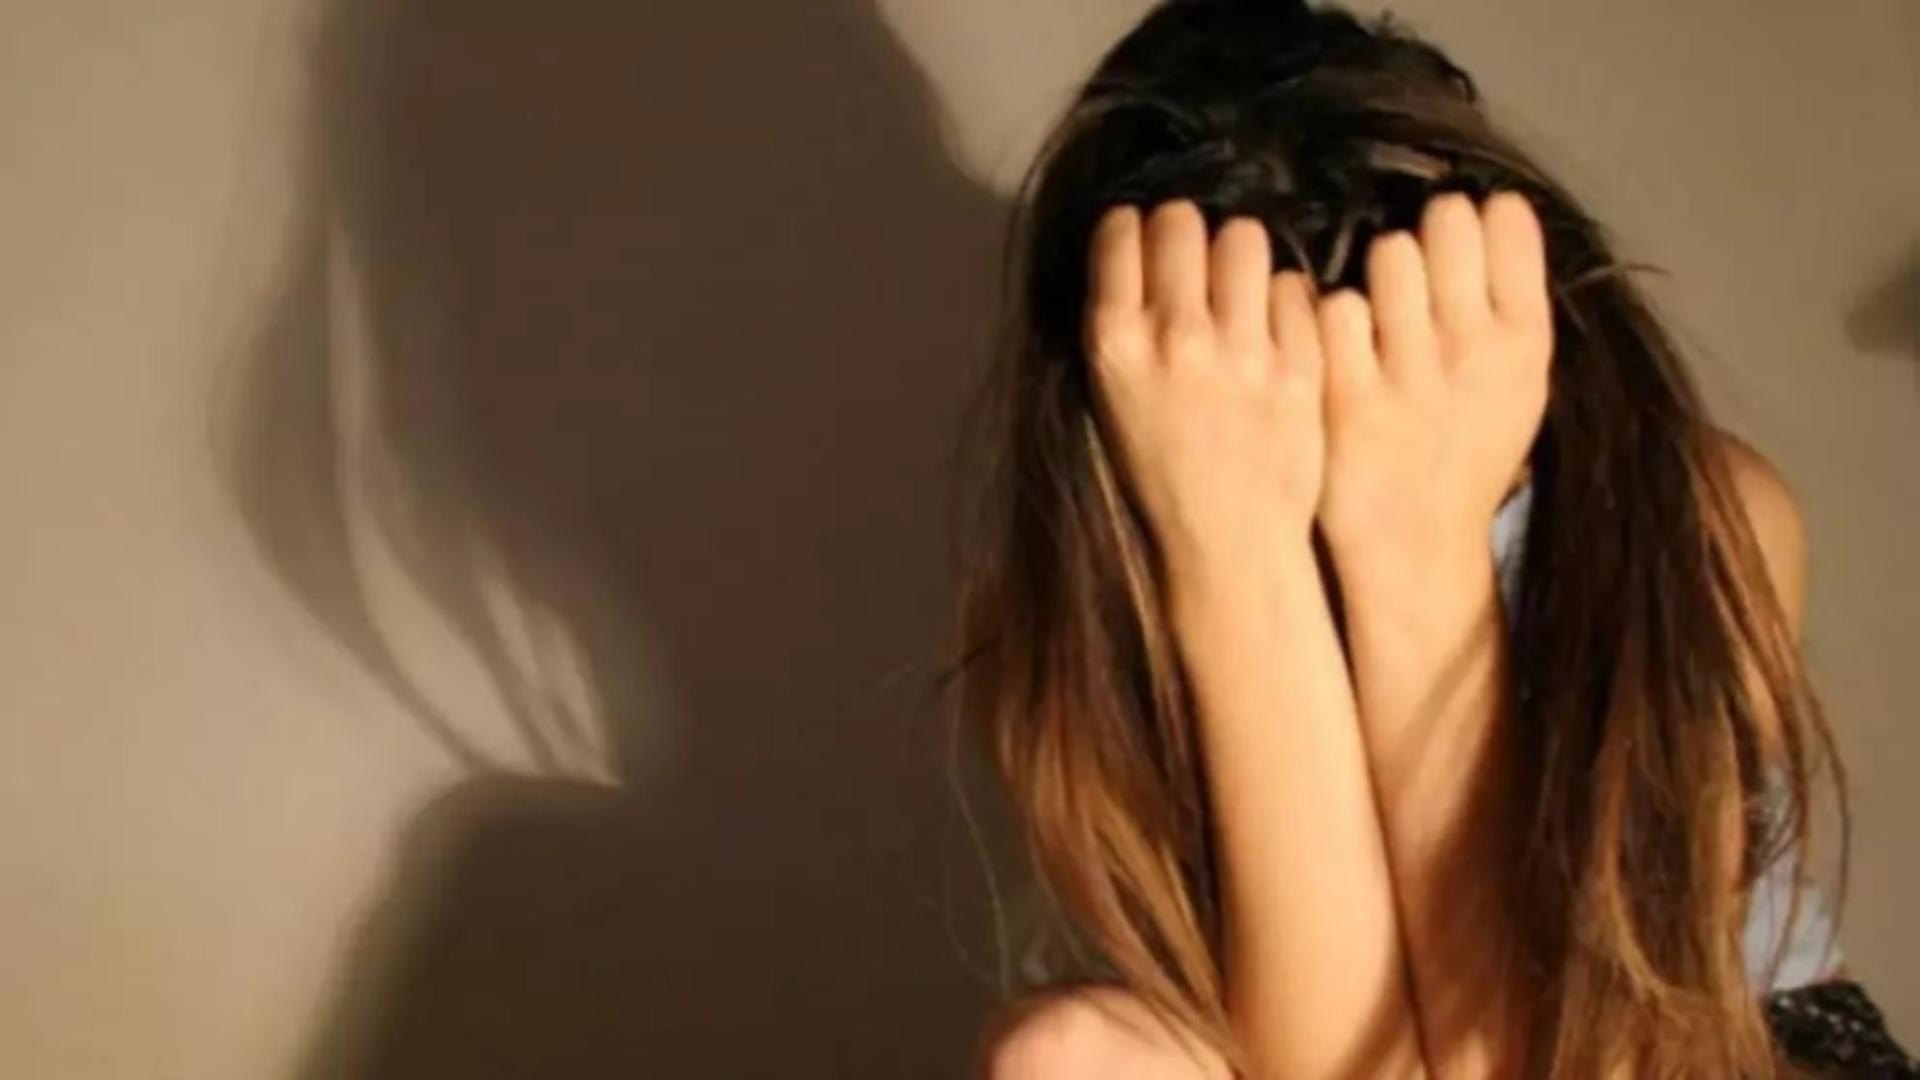 Tânăr de 20 de ani, reținut după ce a sechestrat și abuzat sexual o fată de 15 ani